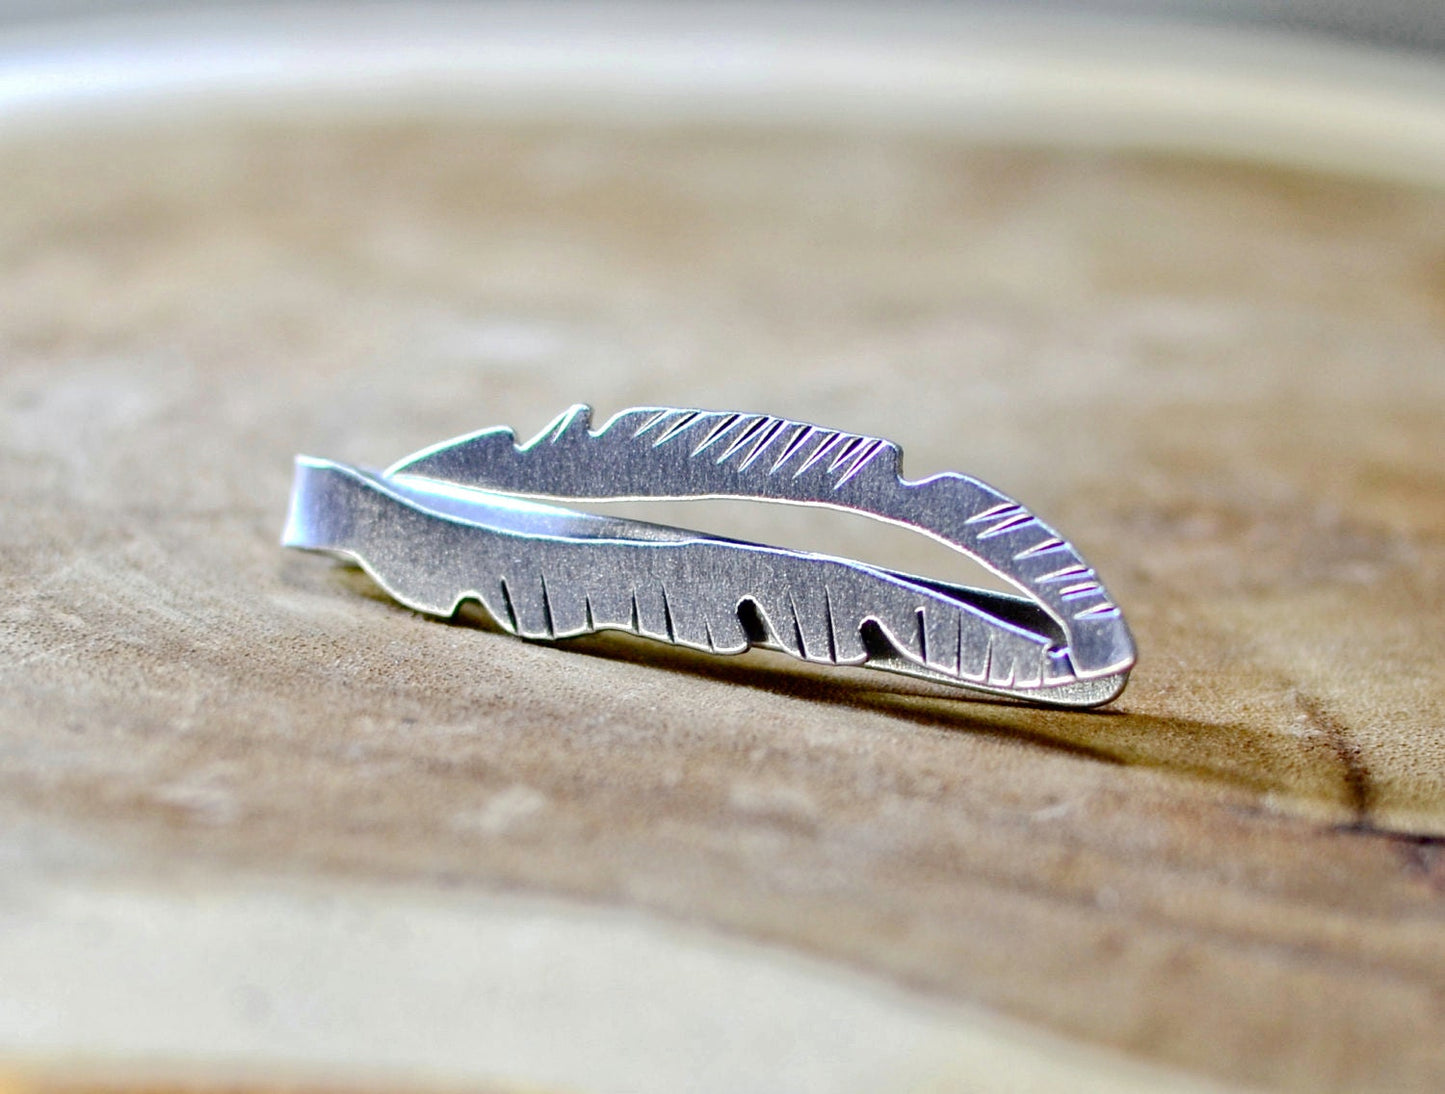 Feather Tie Clip Handmade in Aluminum  - Artistic Tie Bar